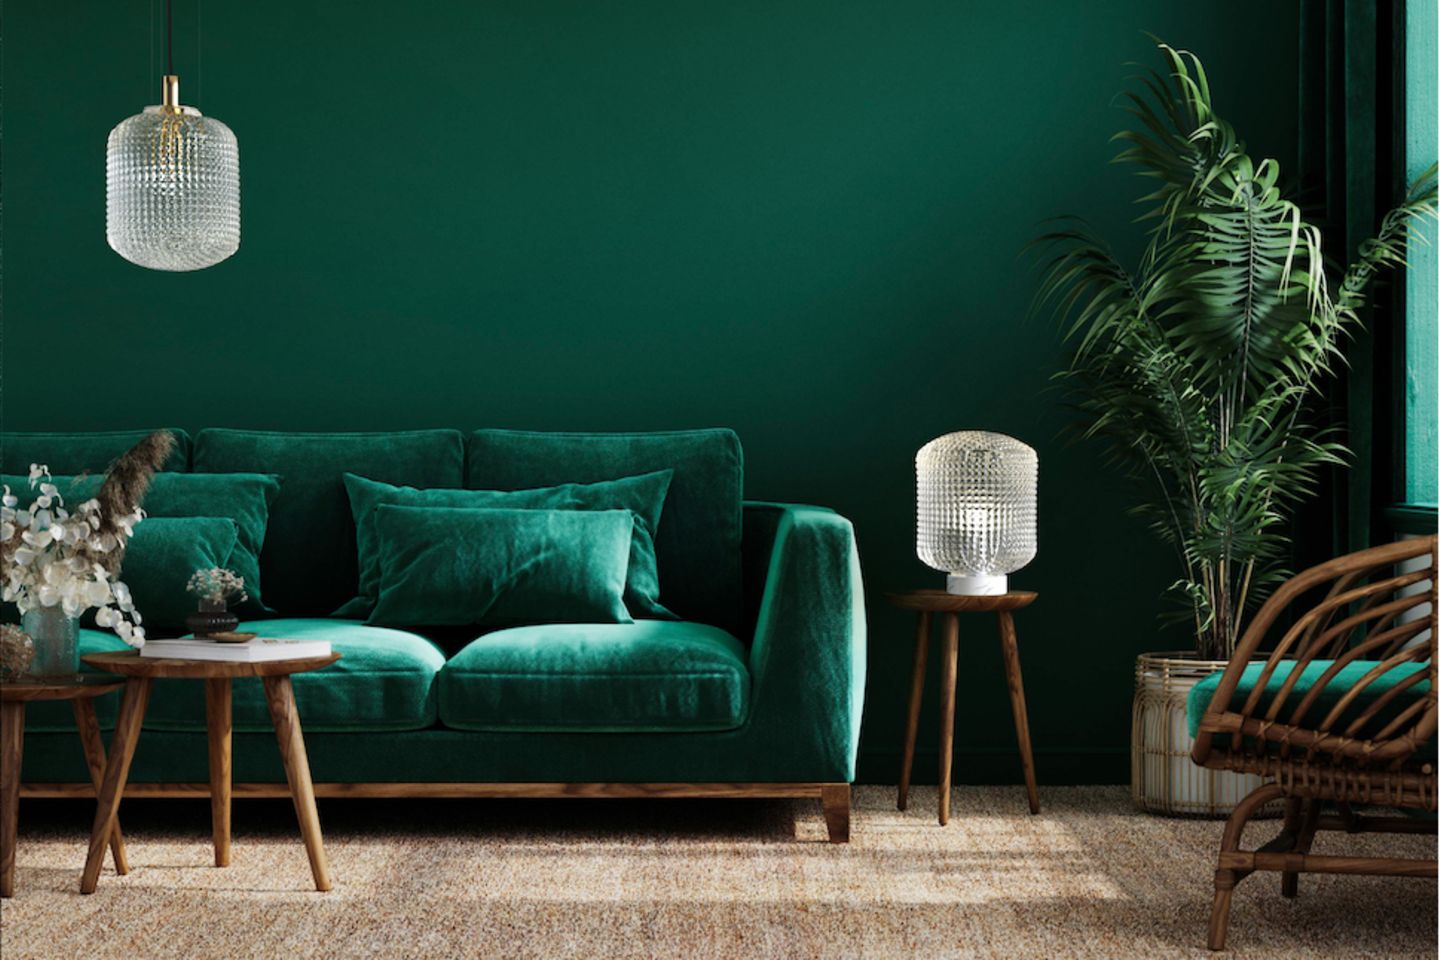 Dunkelgrün gestrichenes Wohnzimmer mit samtgrünem Sofa und dunklen Holzmöbeln sowie hellen Glasleuchten